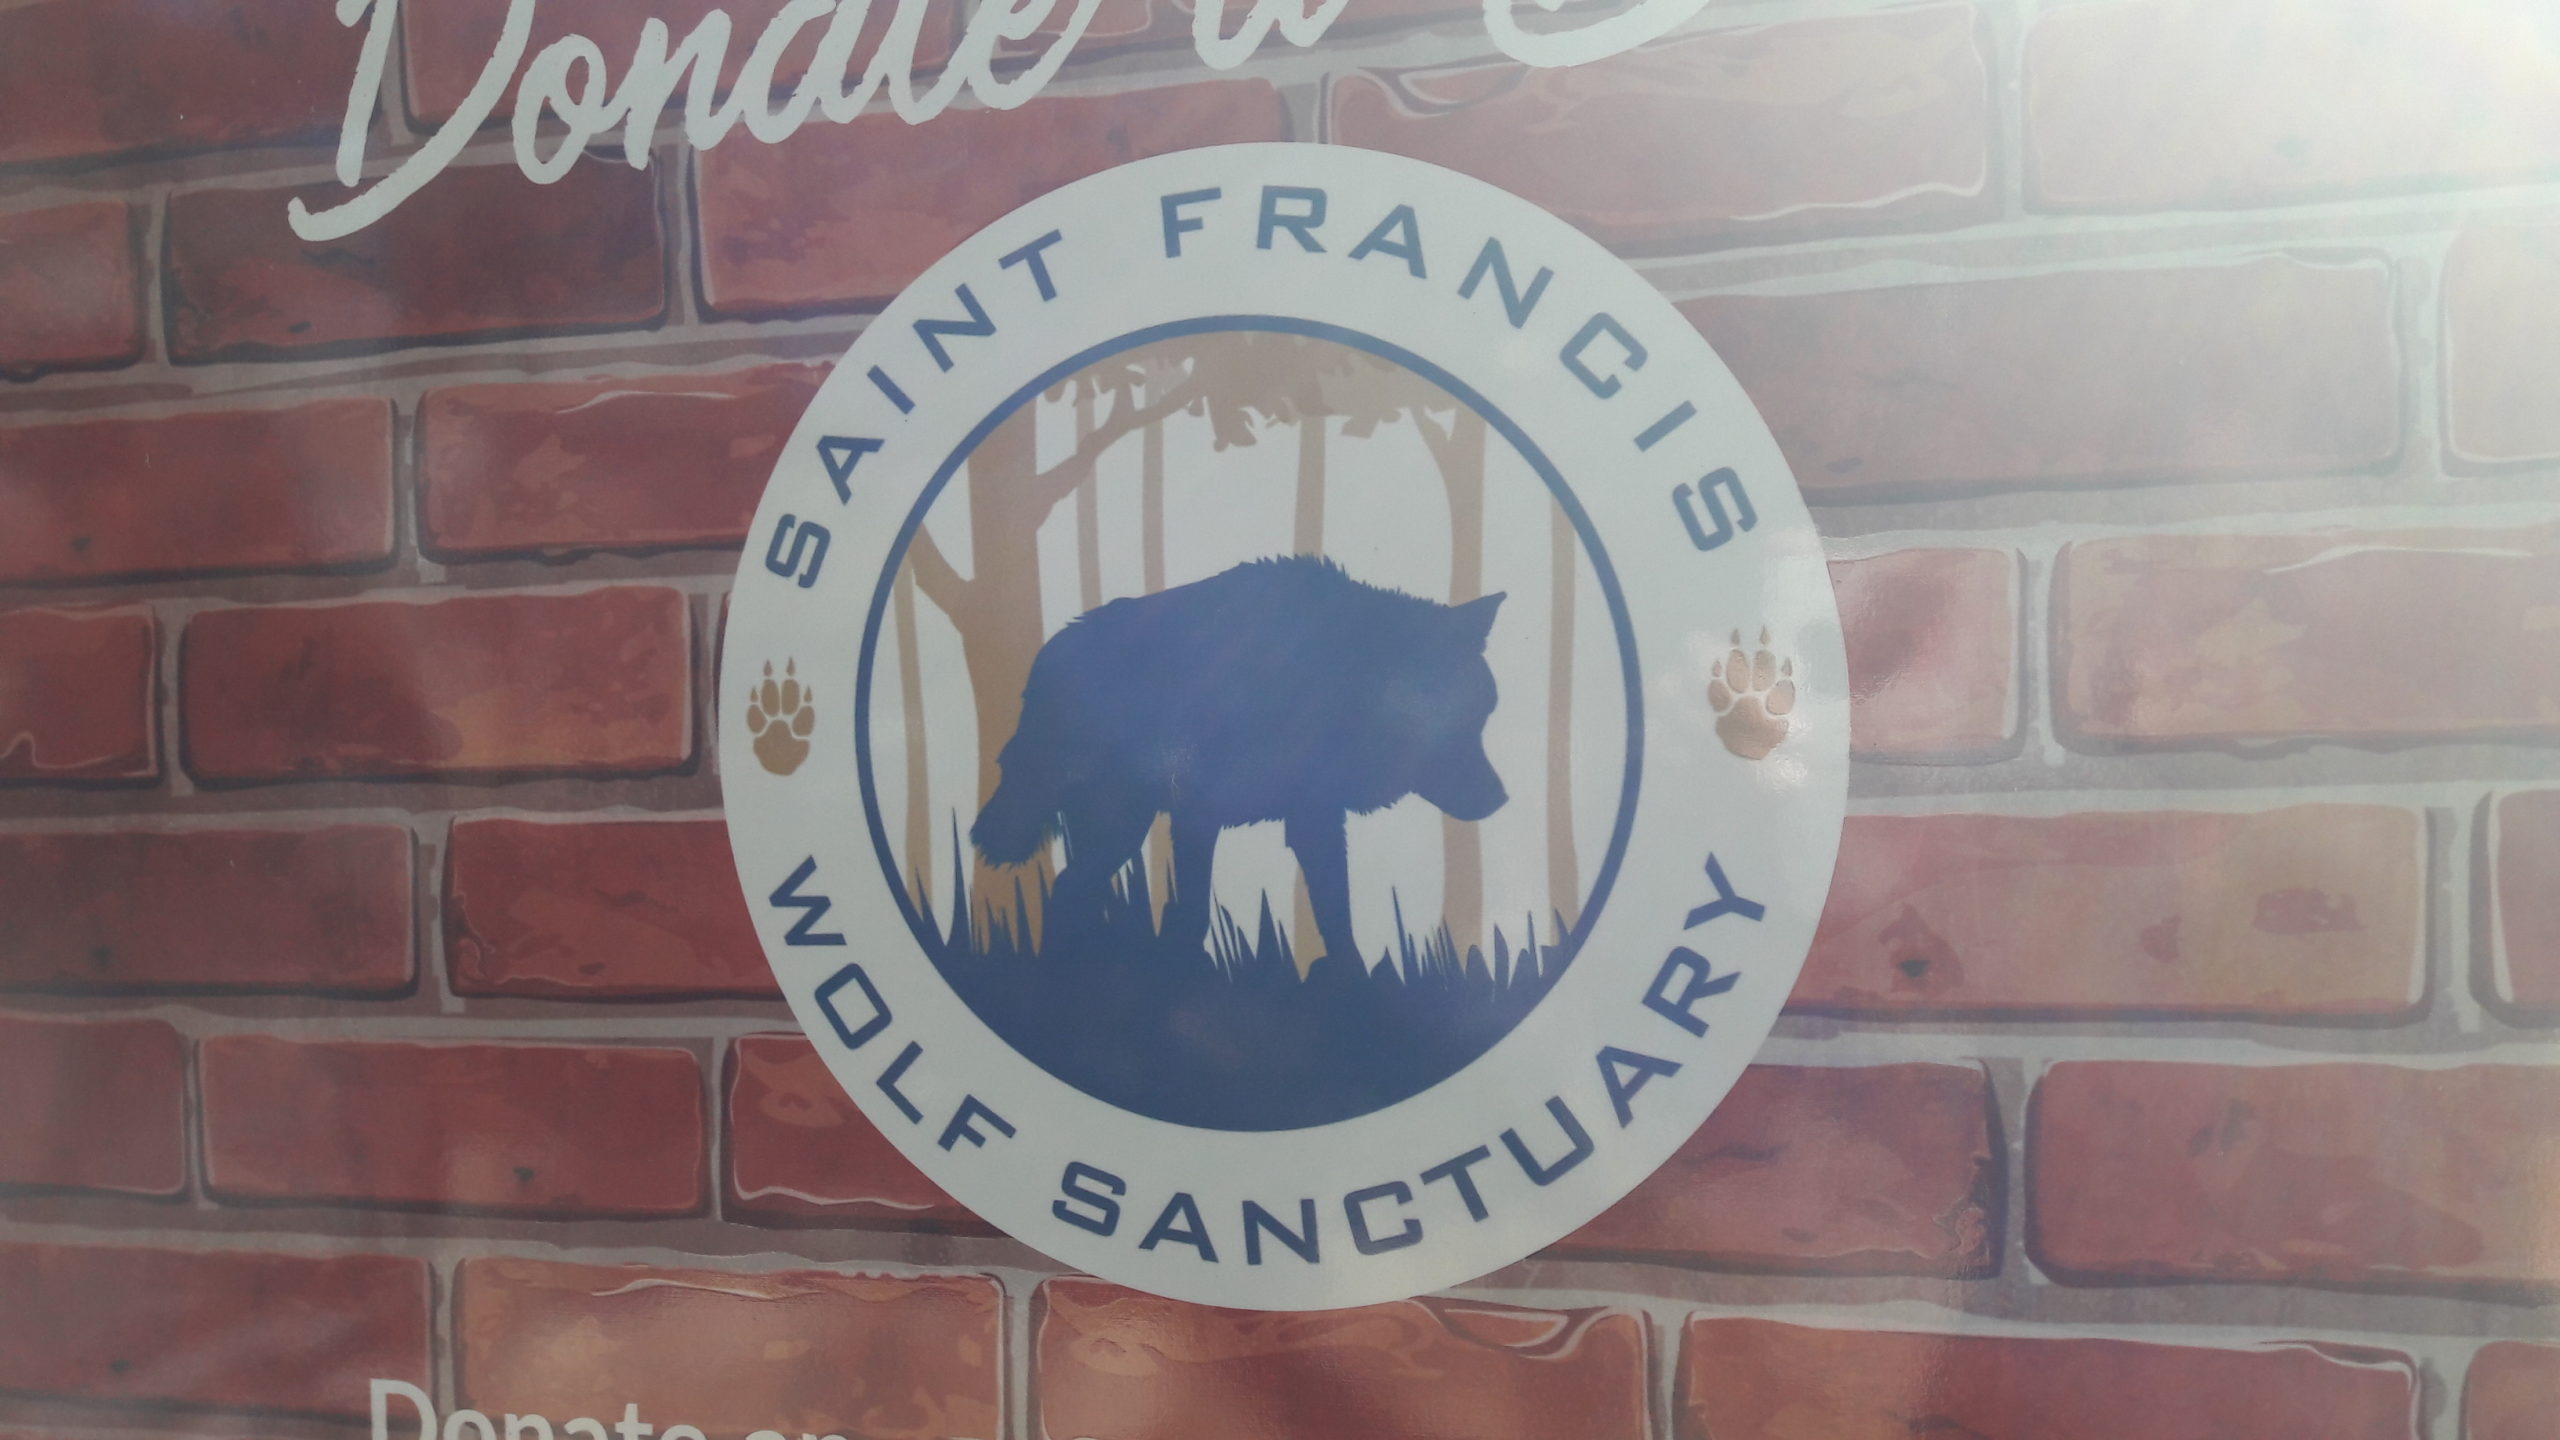 Saint Francis Wolf Sanctuary